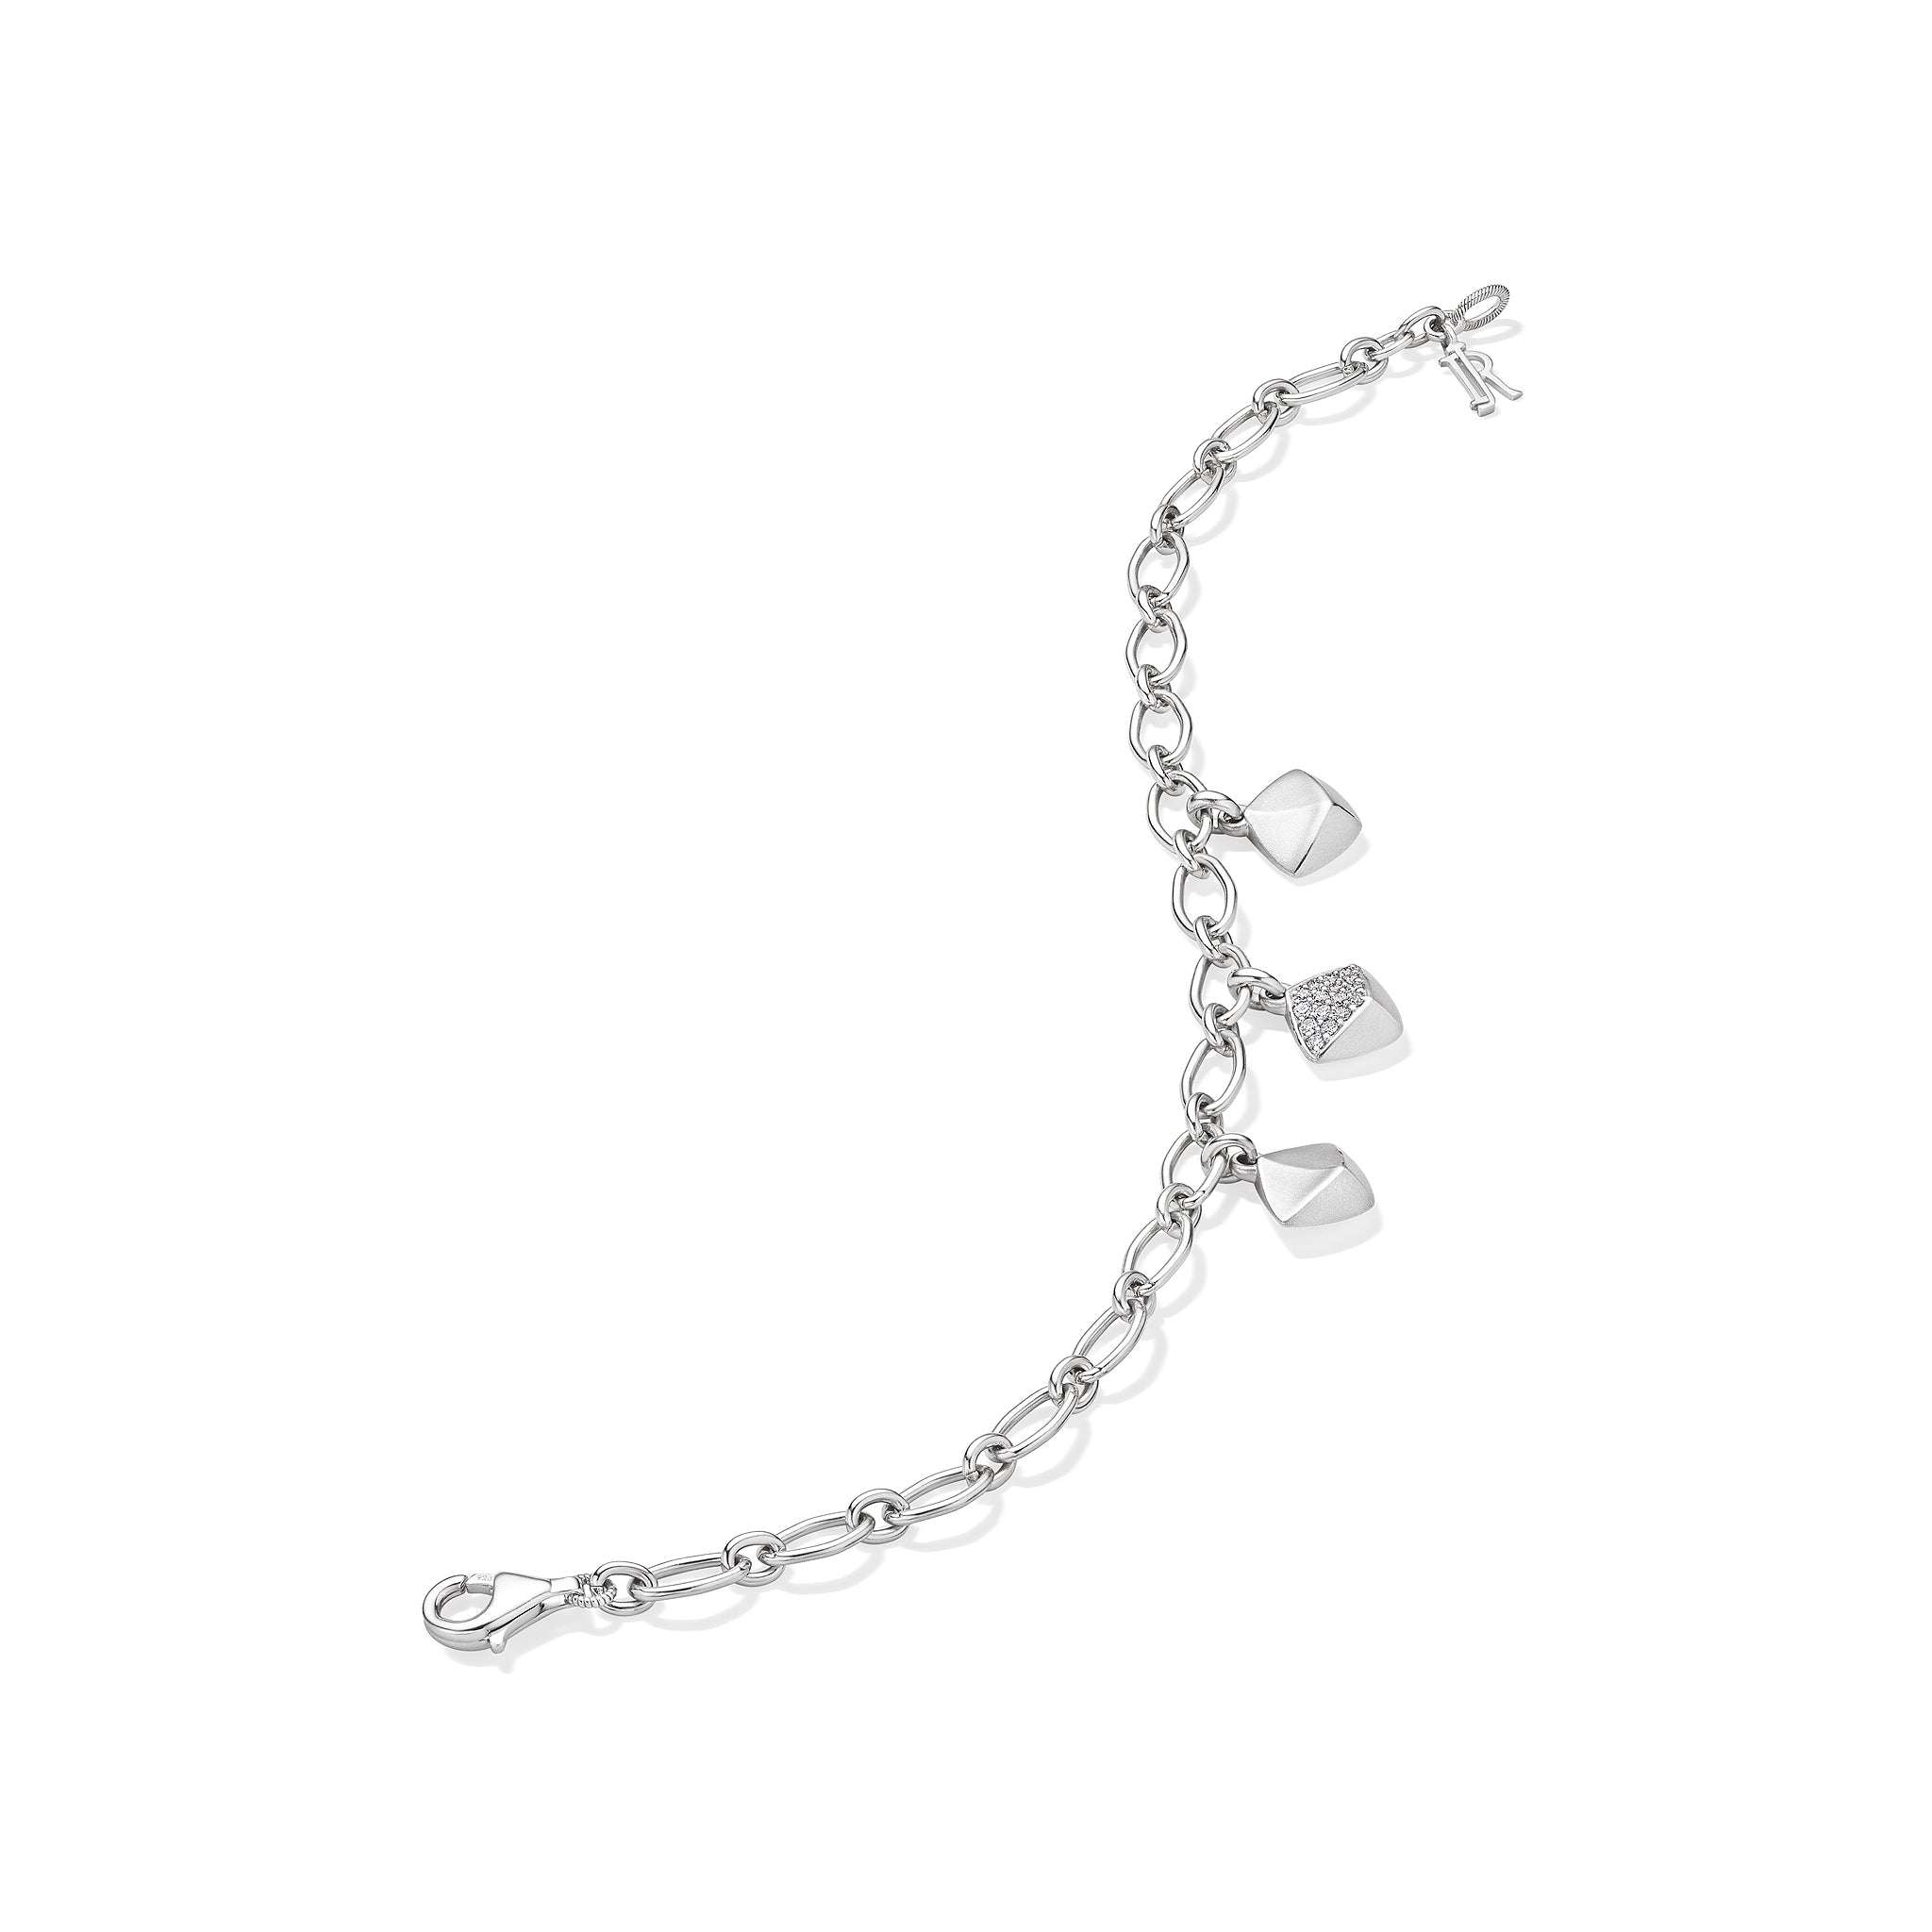 Iris Charm Bracelet with Diamonds